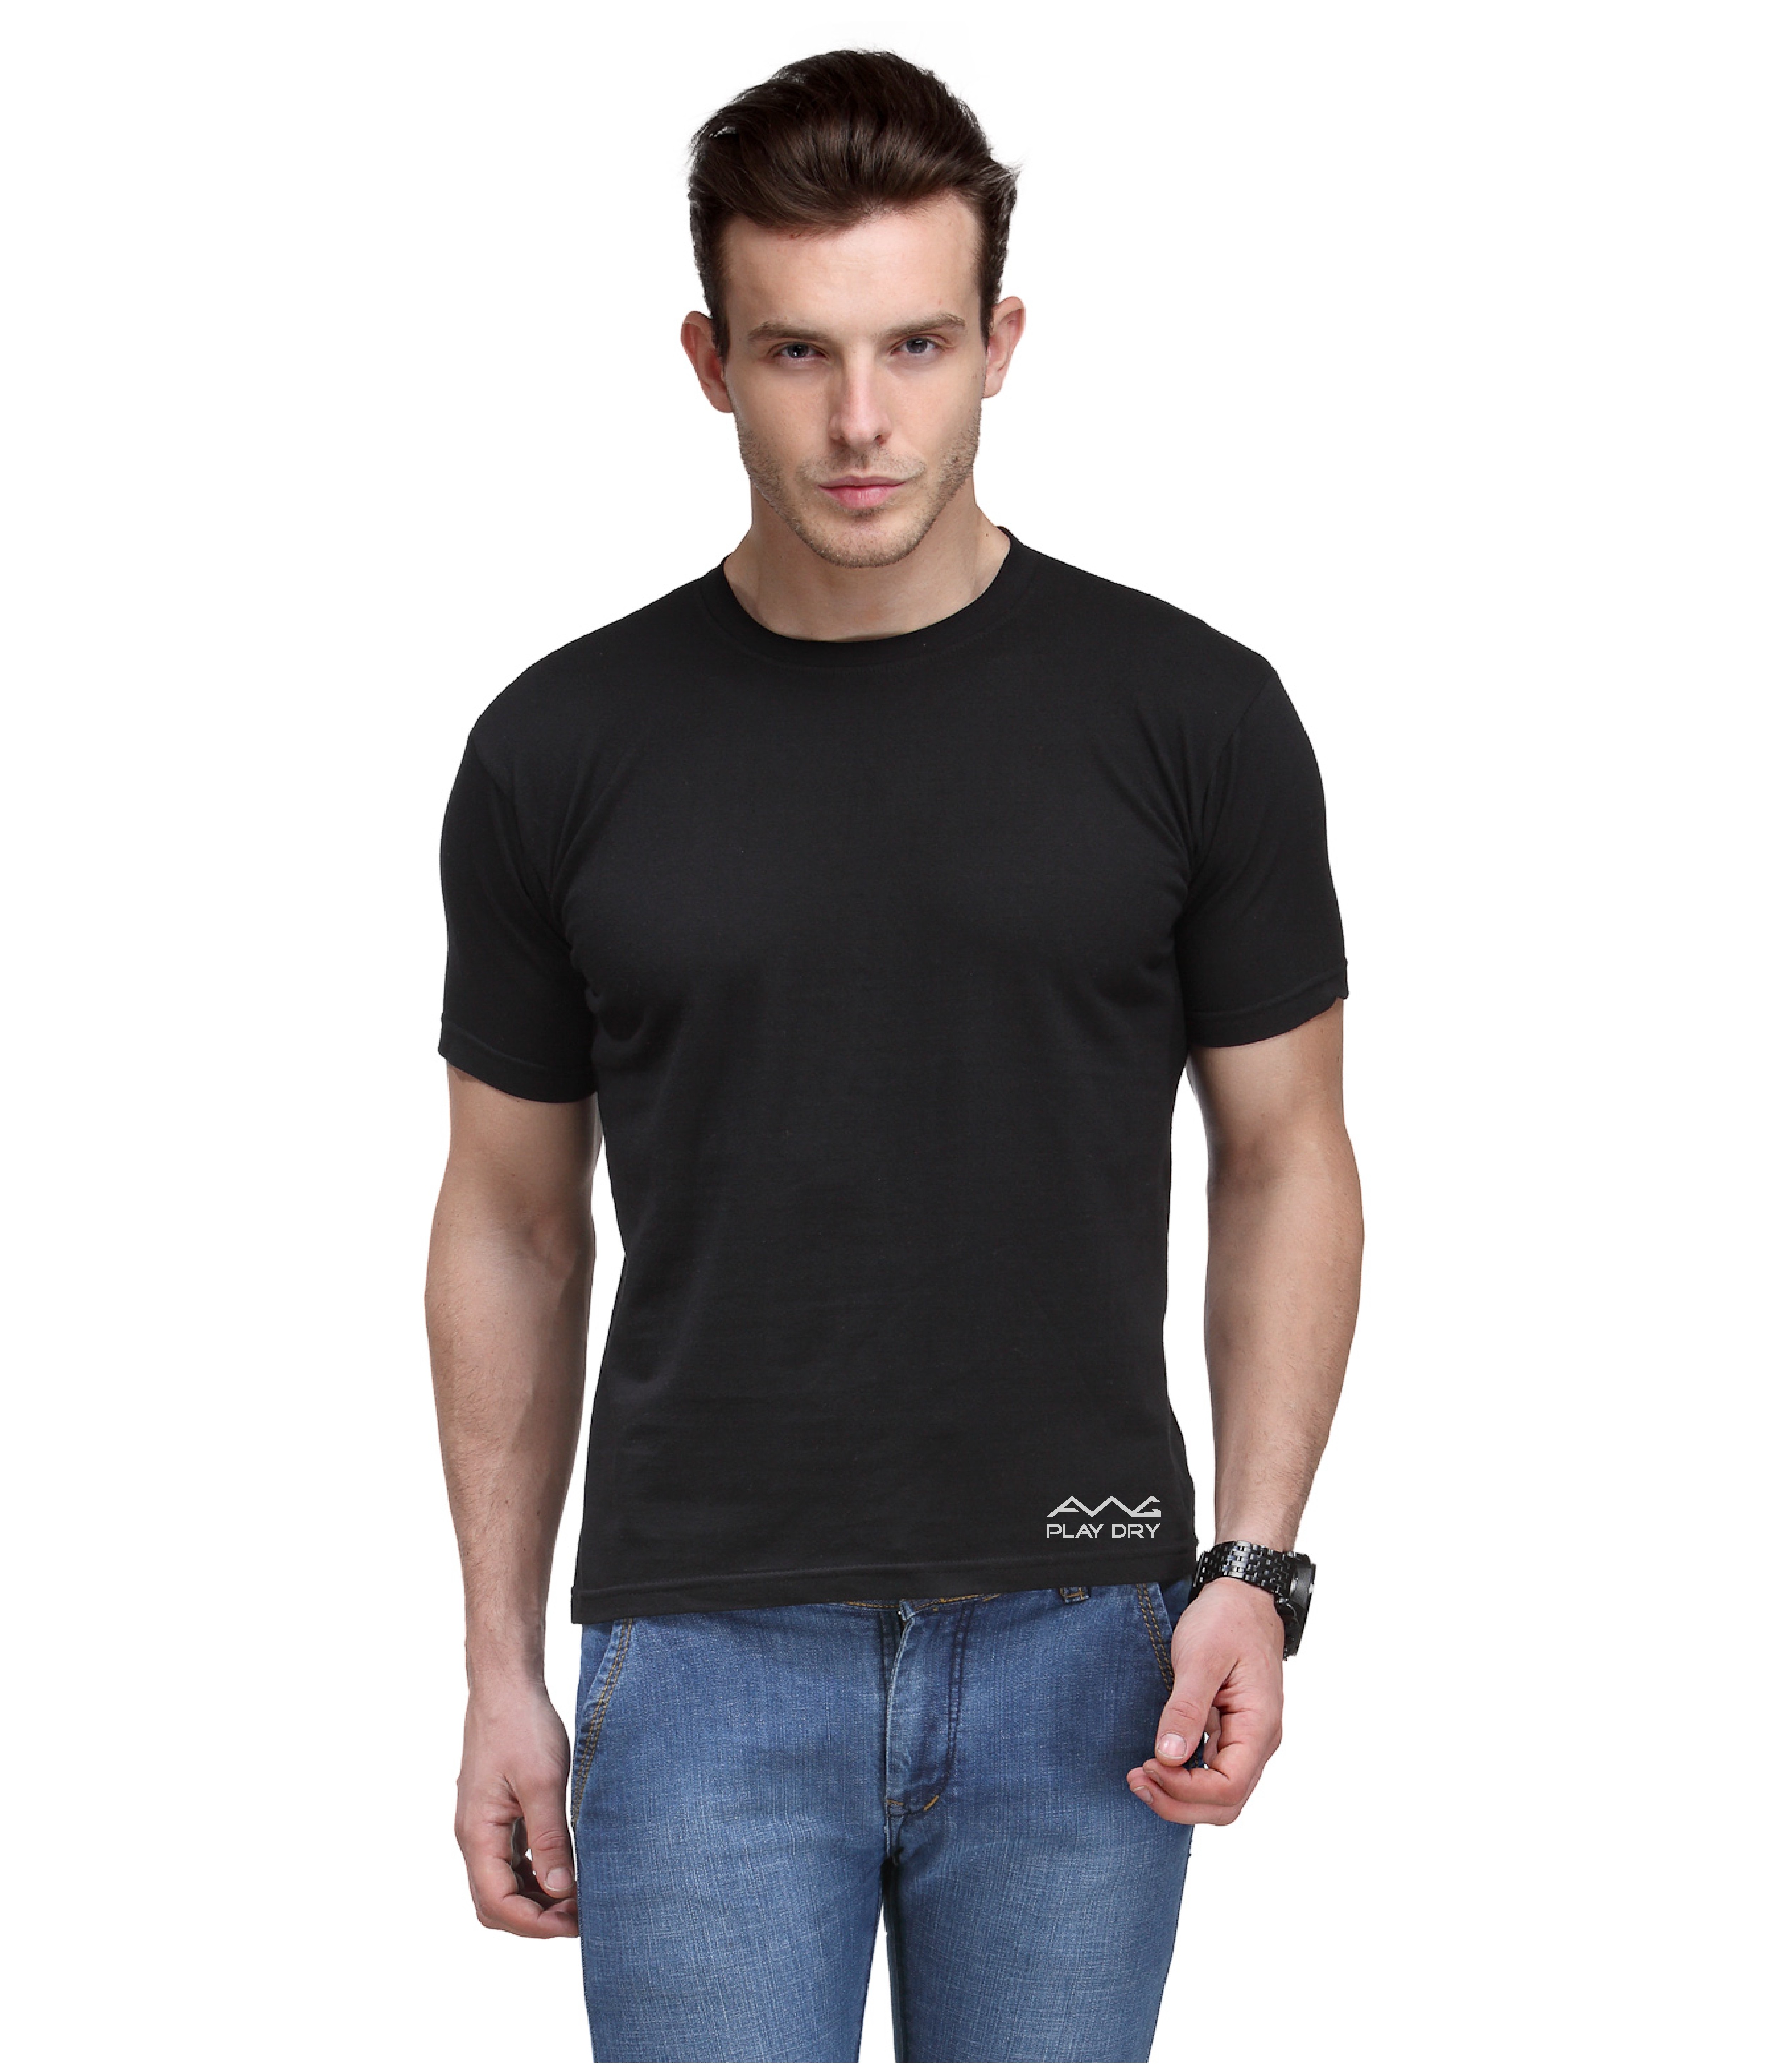 Buy Scott International Men'S Black Dryfit Polyester T-Shirt Online ...